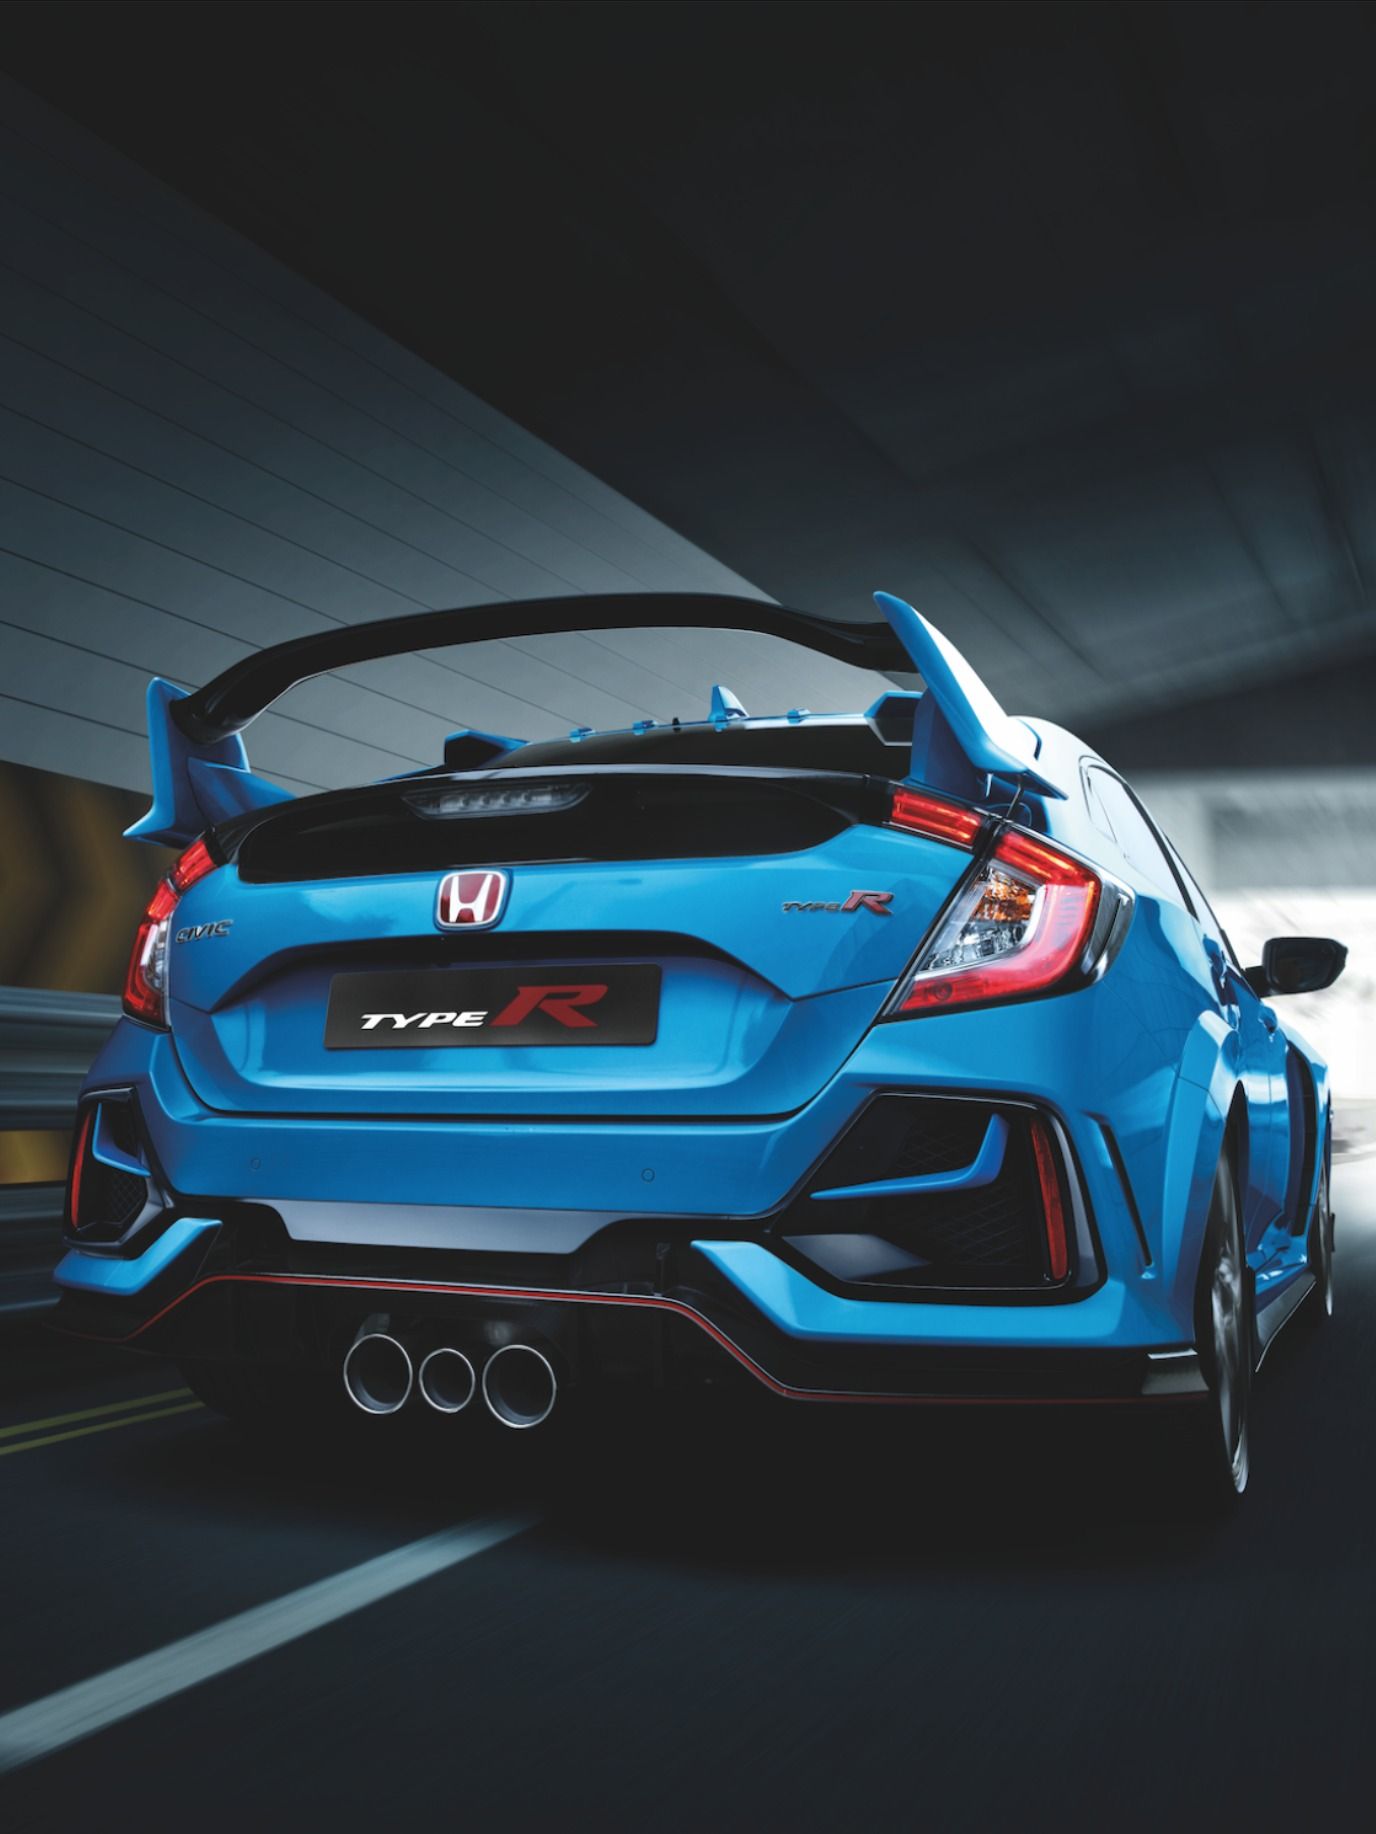 Honda Civic Sport Wallpapers